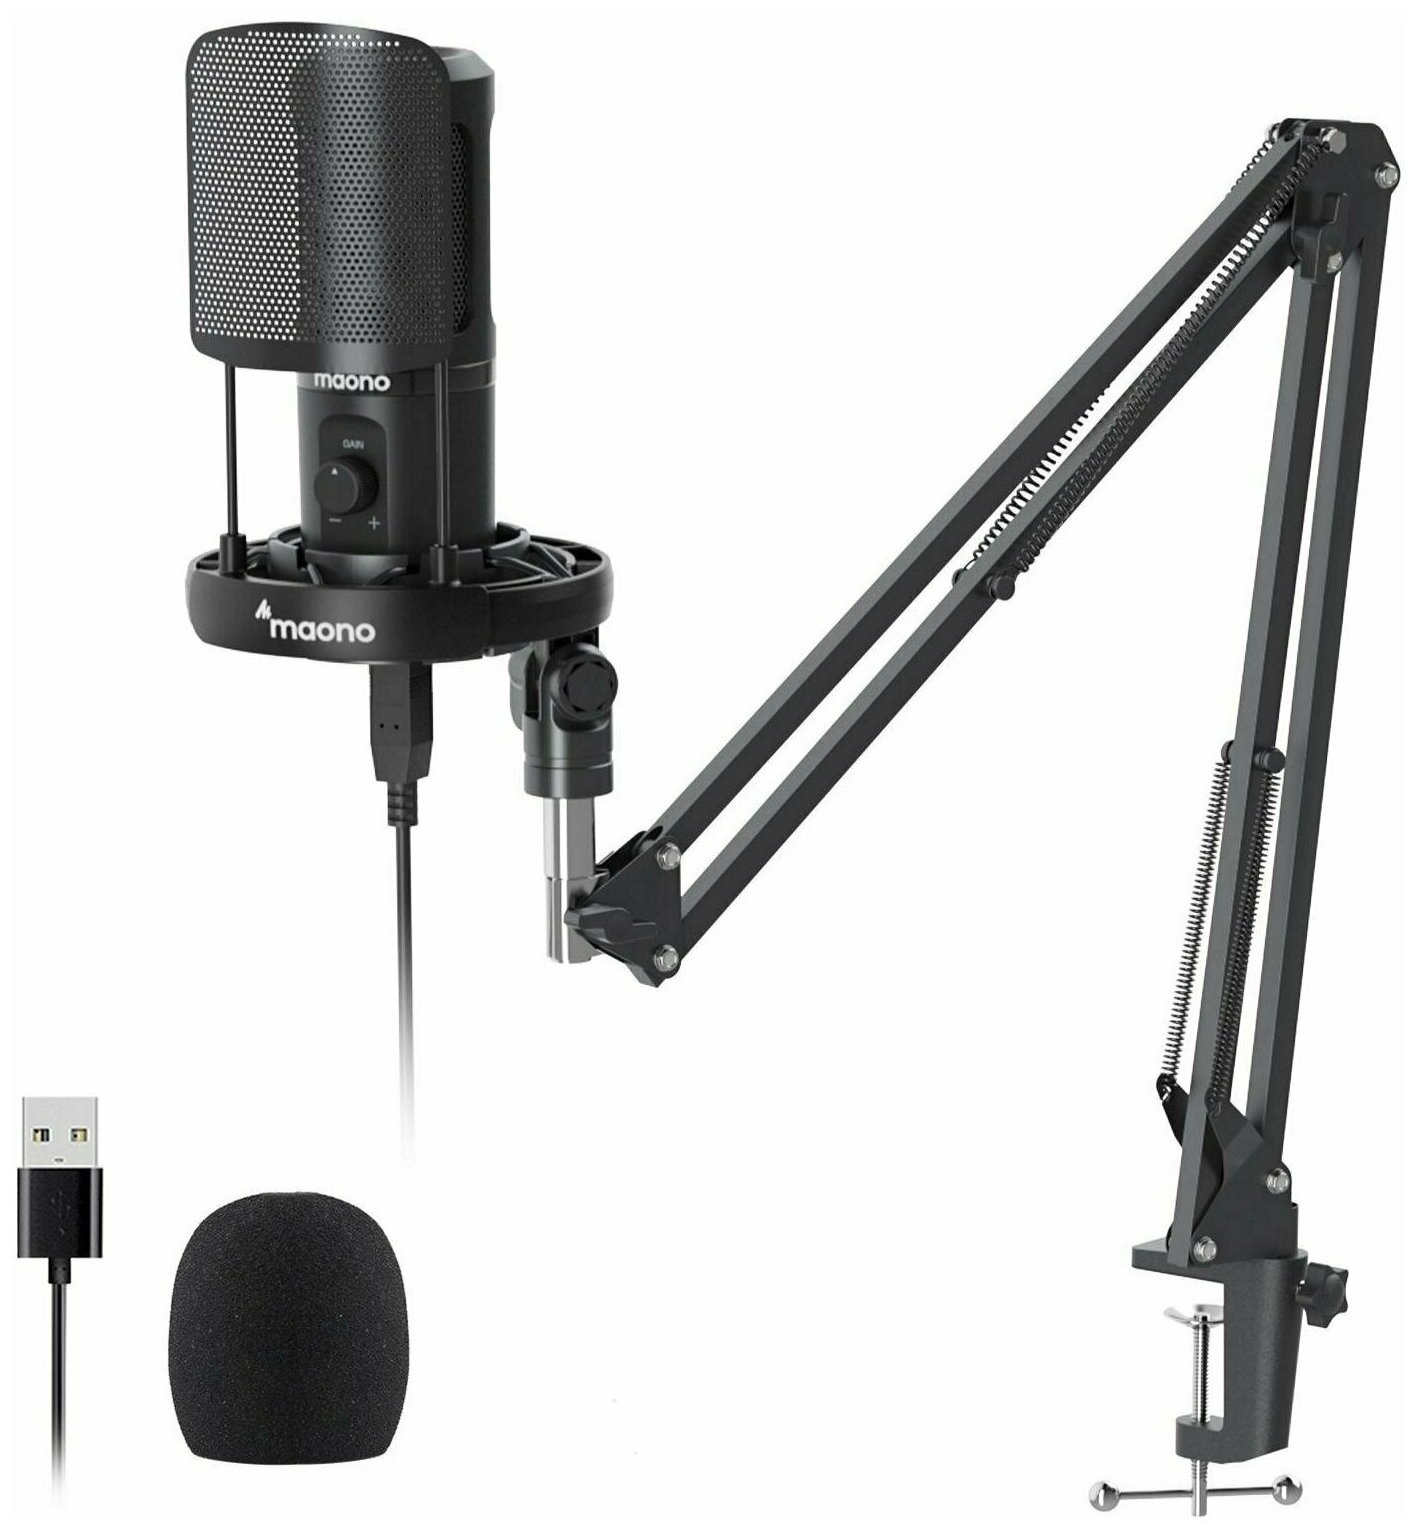 Конденсаторный проводной USB микрофон для компьютера Maono AU-PM461S Podcasting Microphone Kit (USB кабель, поп фильтр в комплекте, пантограф, Black) для подкастов, стримов, конференций